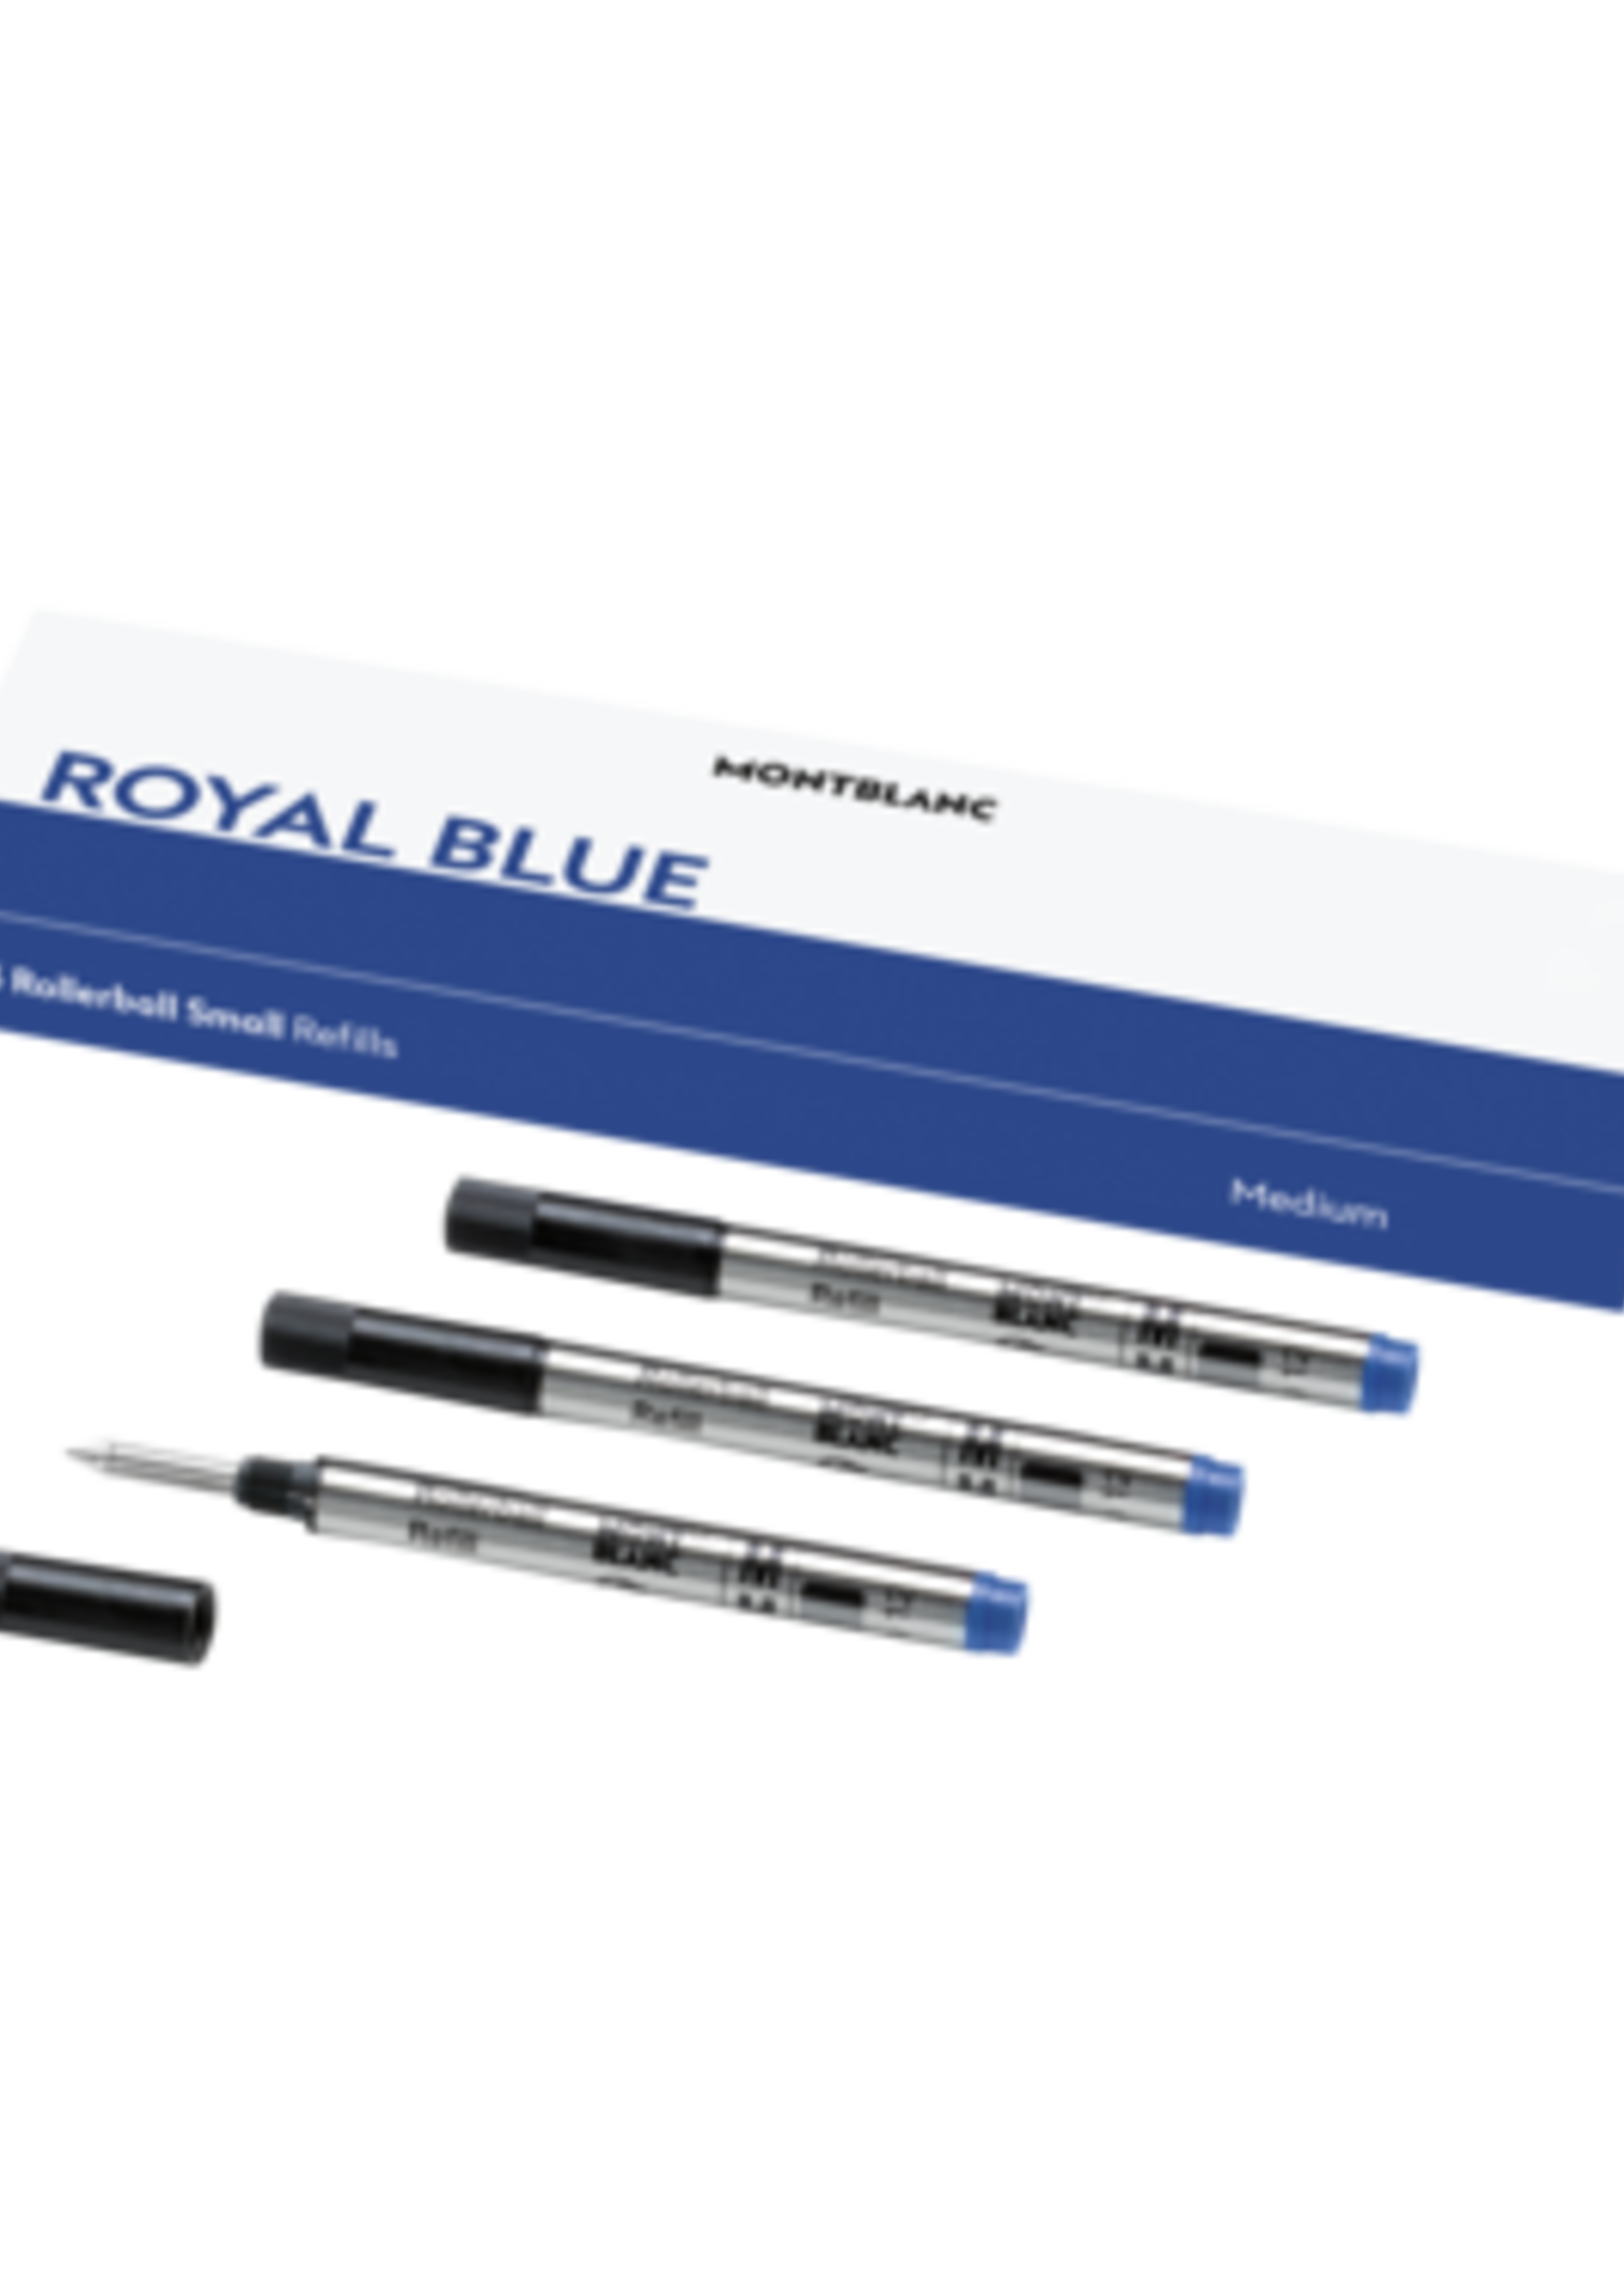 Montblanc 3 Rollerball-Minen klein, Royal Blue (M)